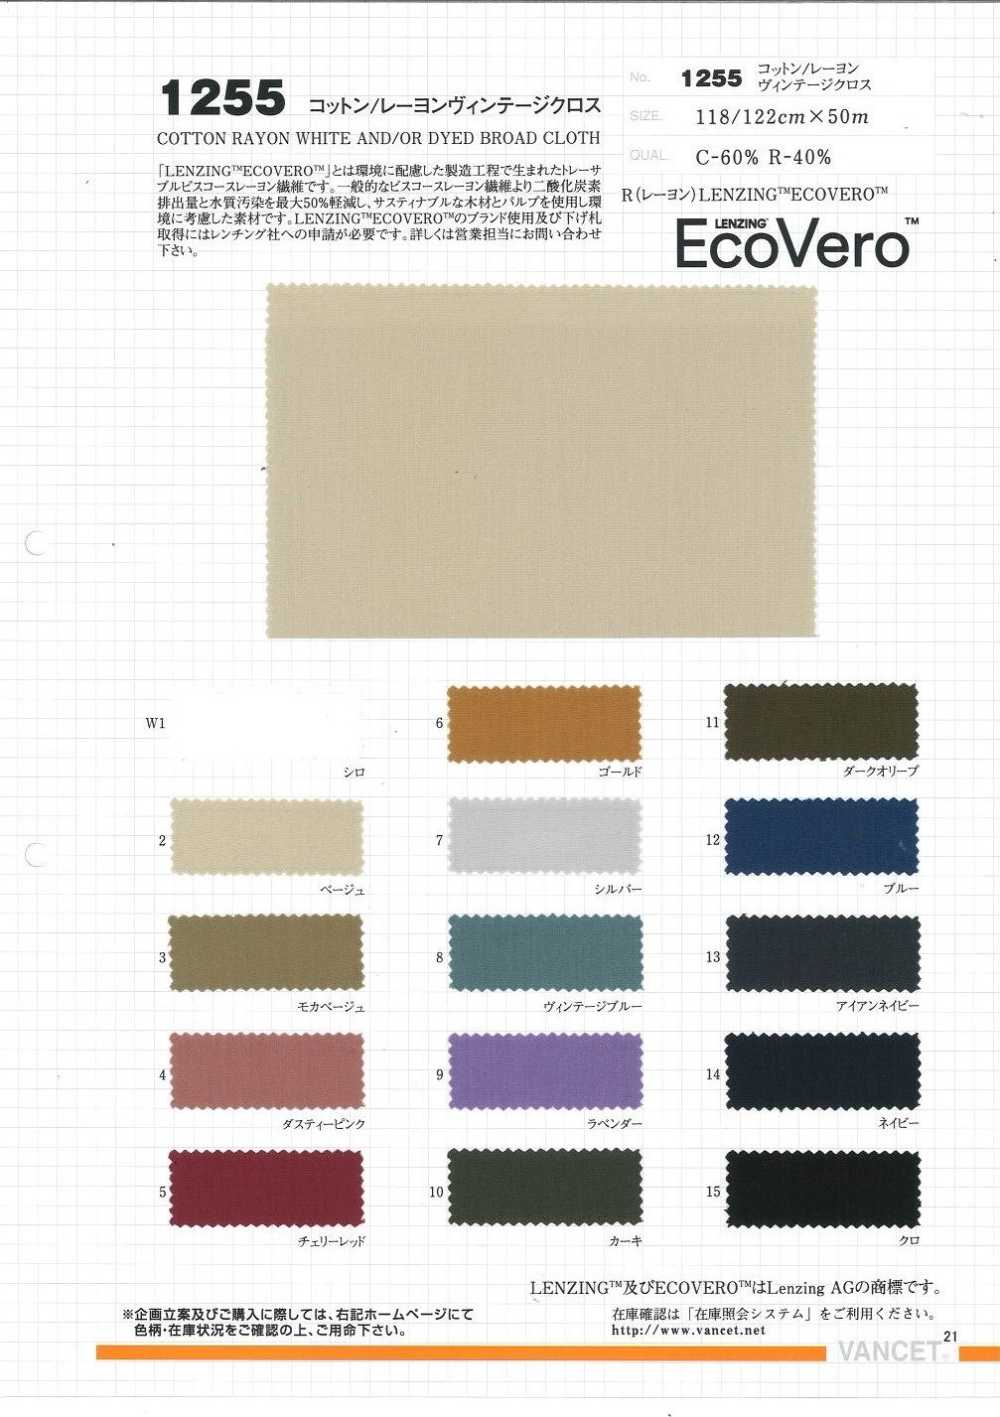 1255 Cotton / Rayon (Eco Velo) Vải Cổ điển VANCET